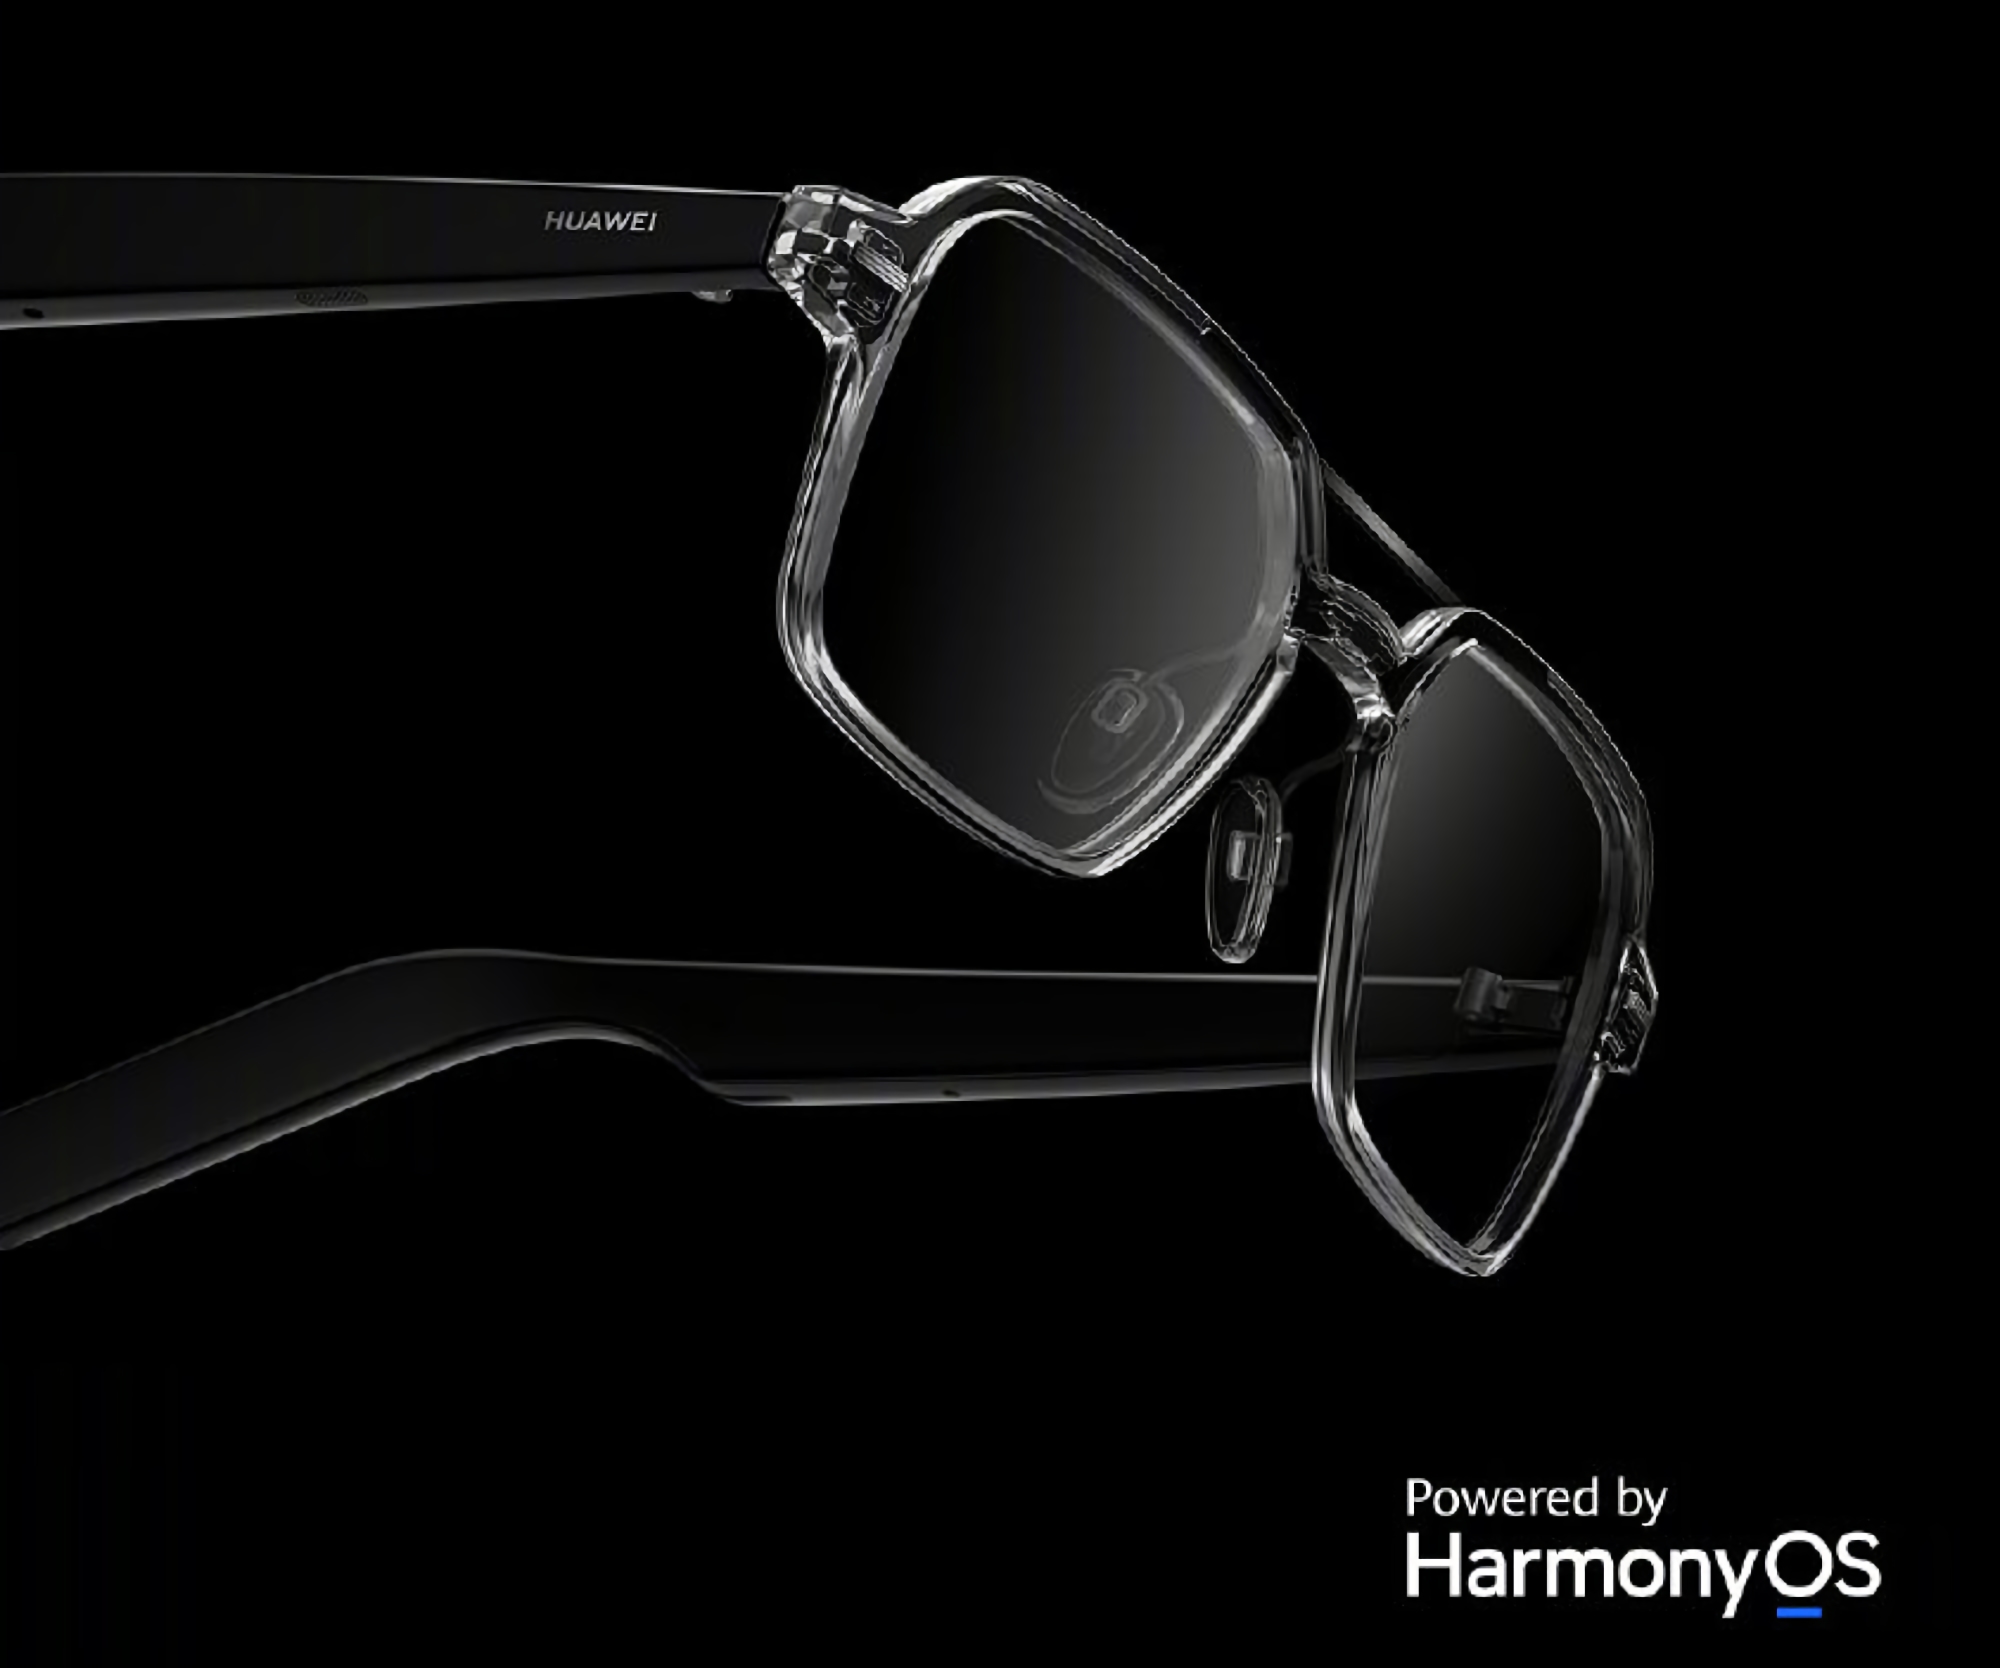 Huawei presenta nuevas gafas inteligentes con HarmonyOS a bordo, protección IPX4, parlantes incorporados y autonomía de hasta 16 horas